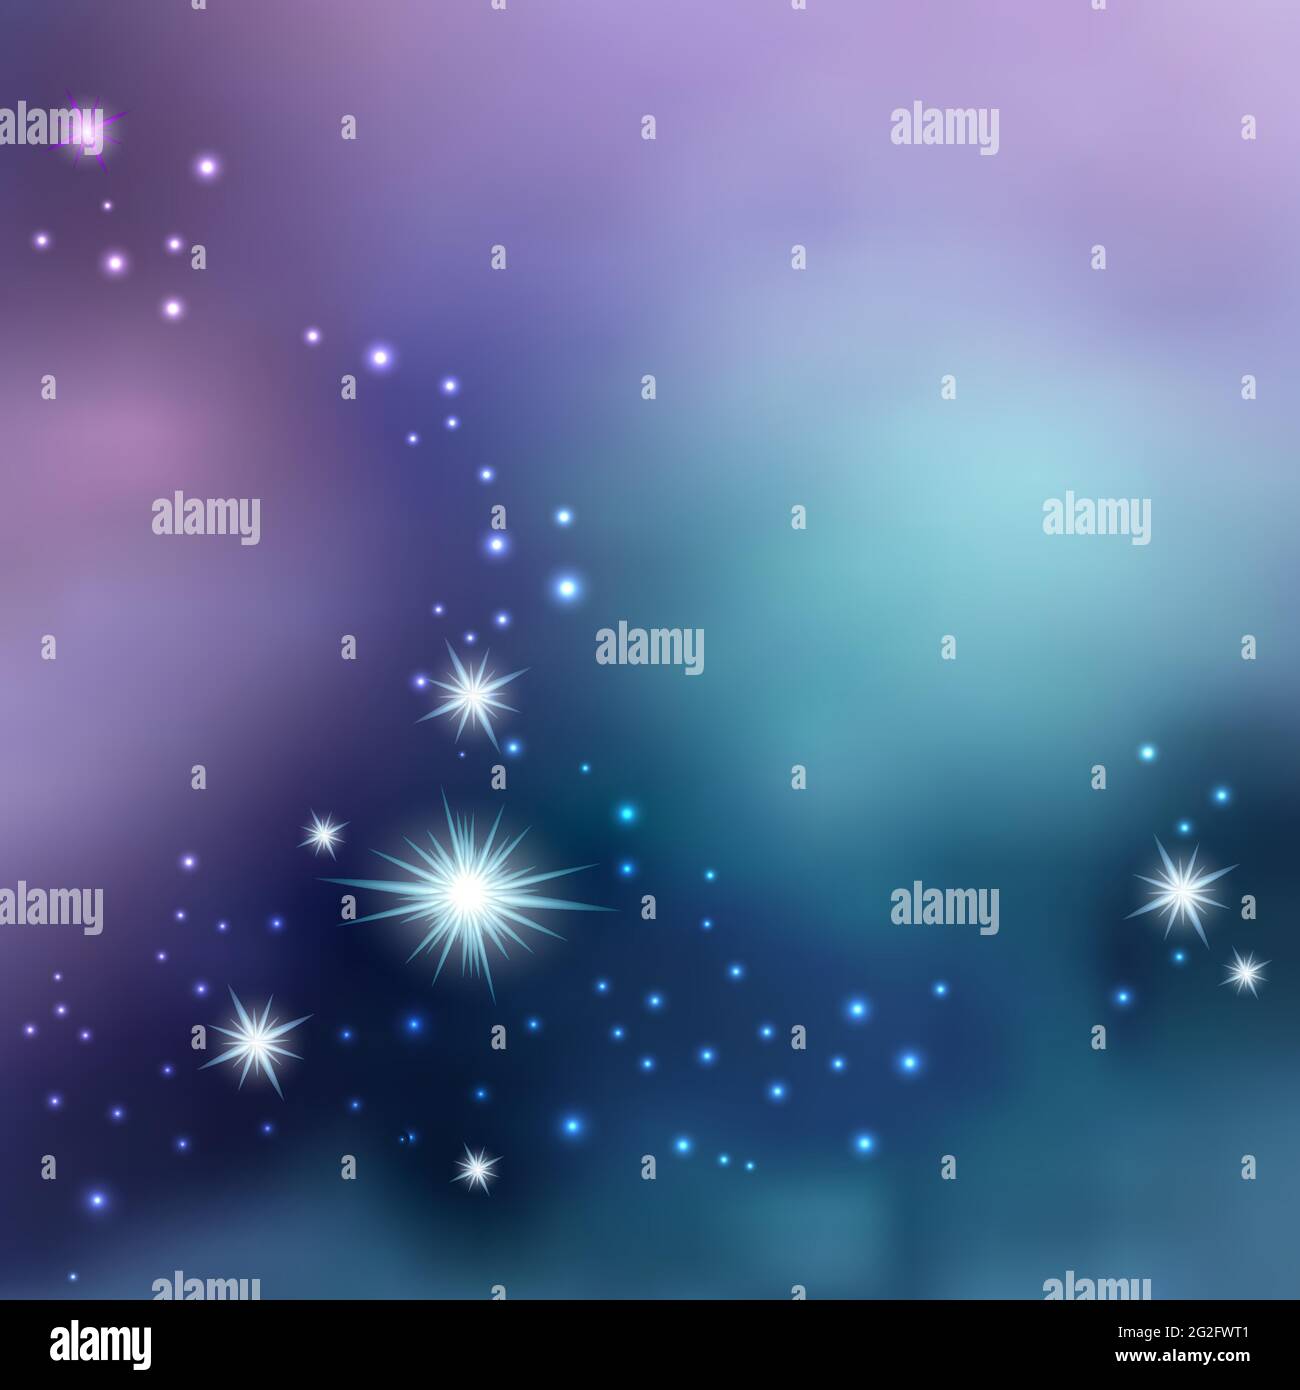 Ciel nocturne aux étoiles brillantes. Fond de l'espace Galaxy, Nebula stardust. Univers cosmique. Illustration vectorielle Illustration de Vecteur